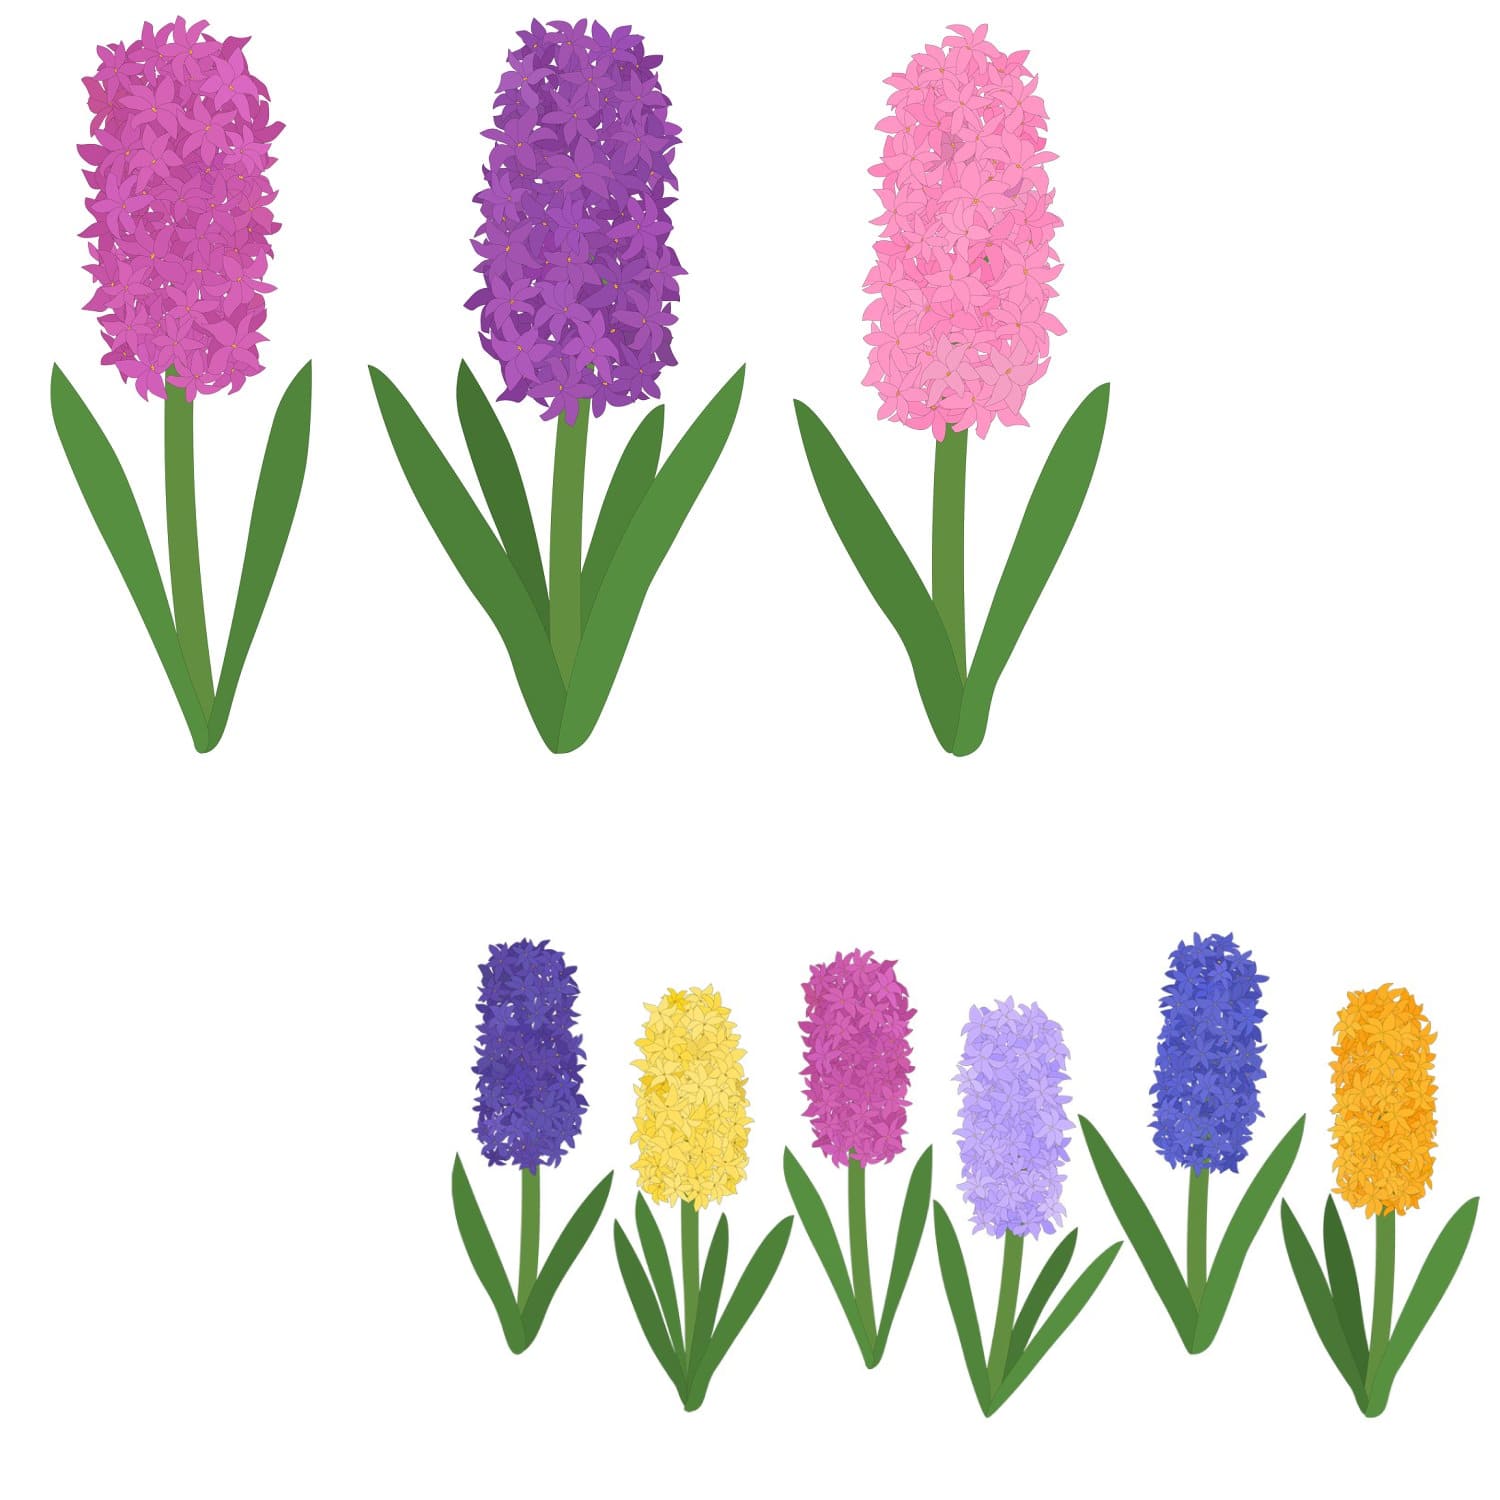 hyacinths flower, hyacinths vector.